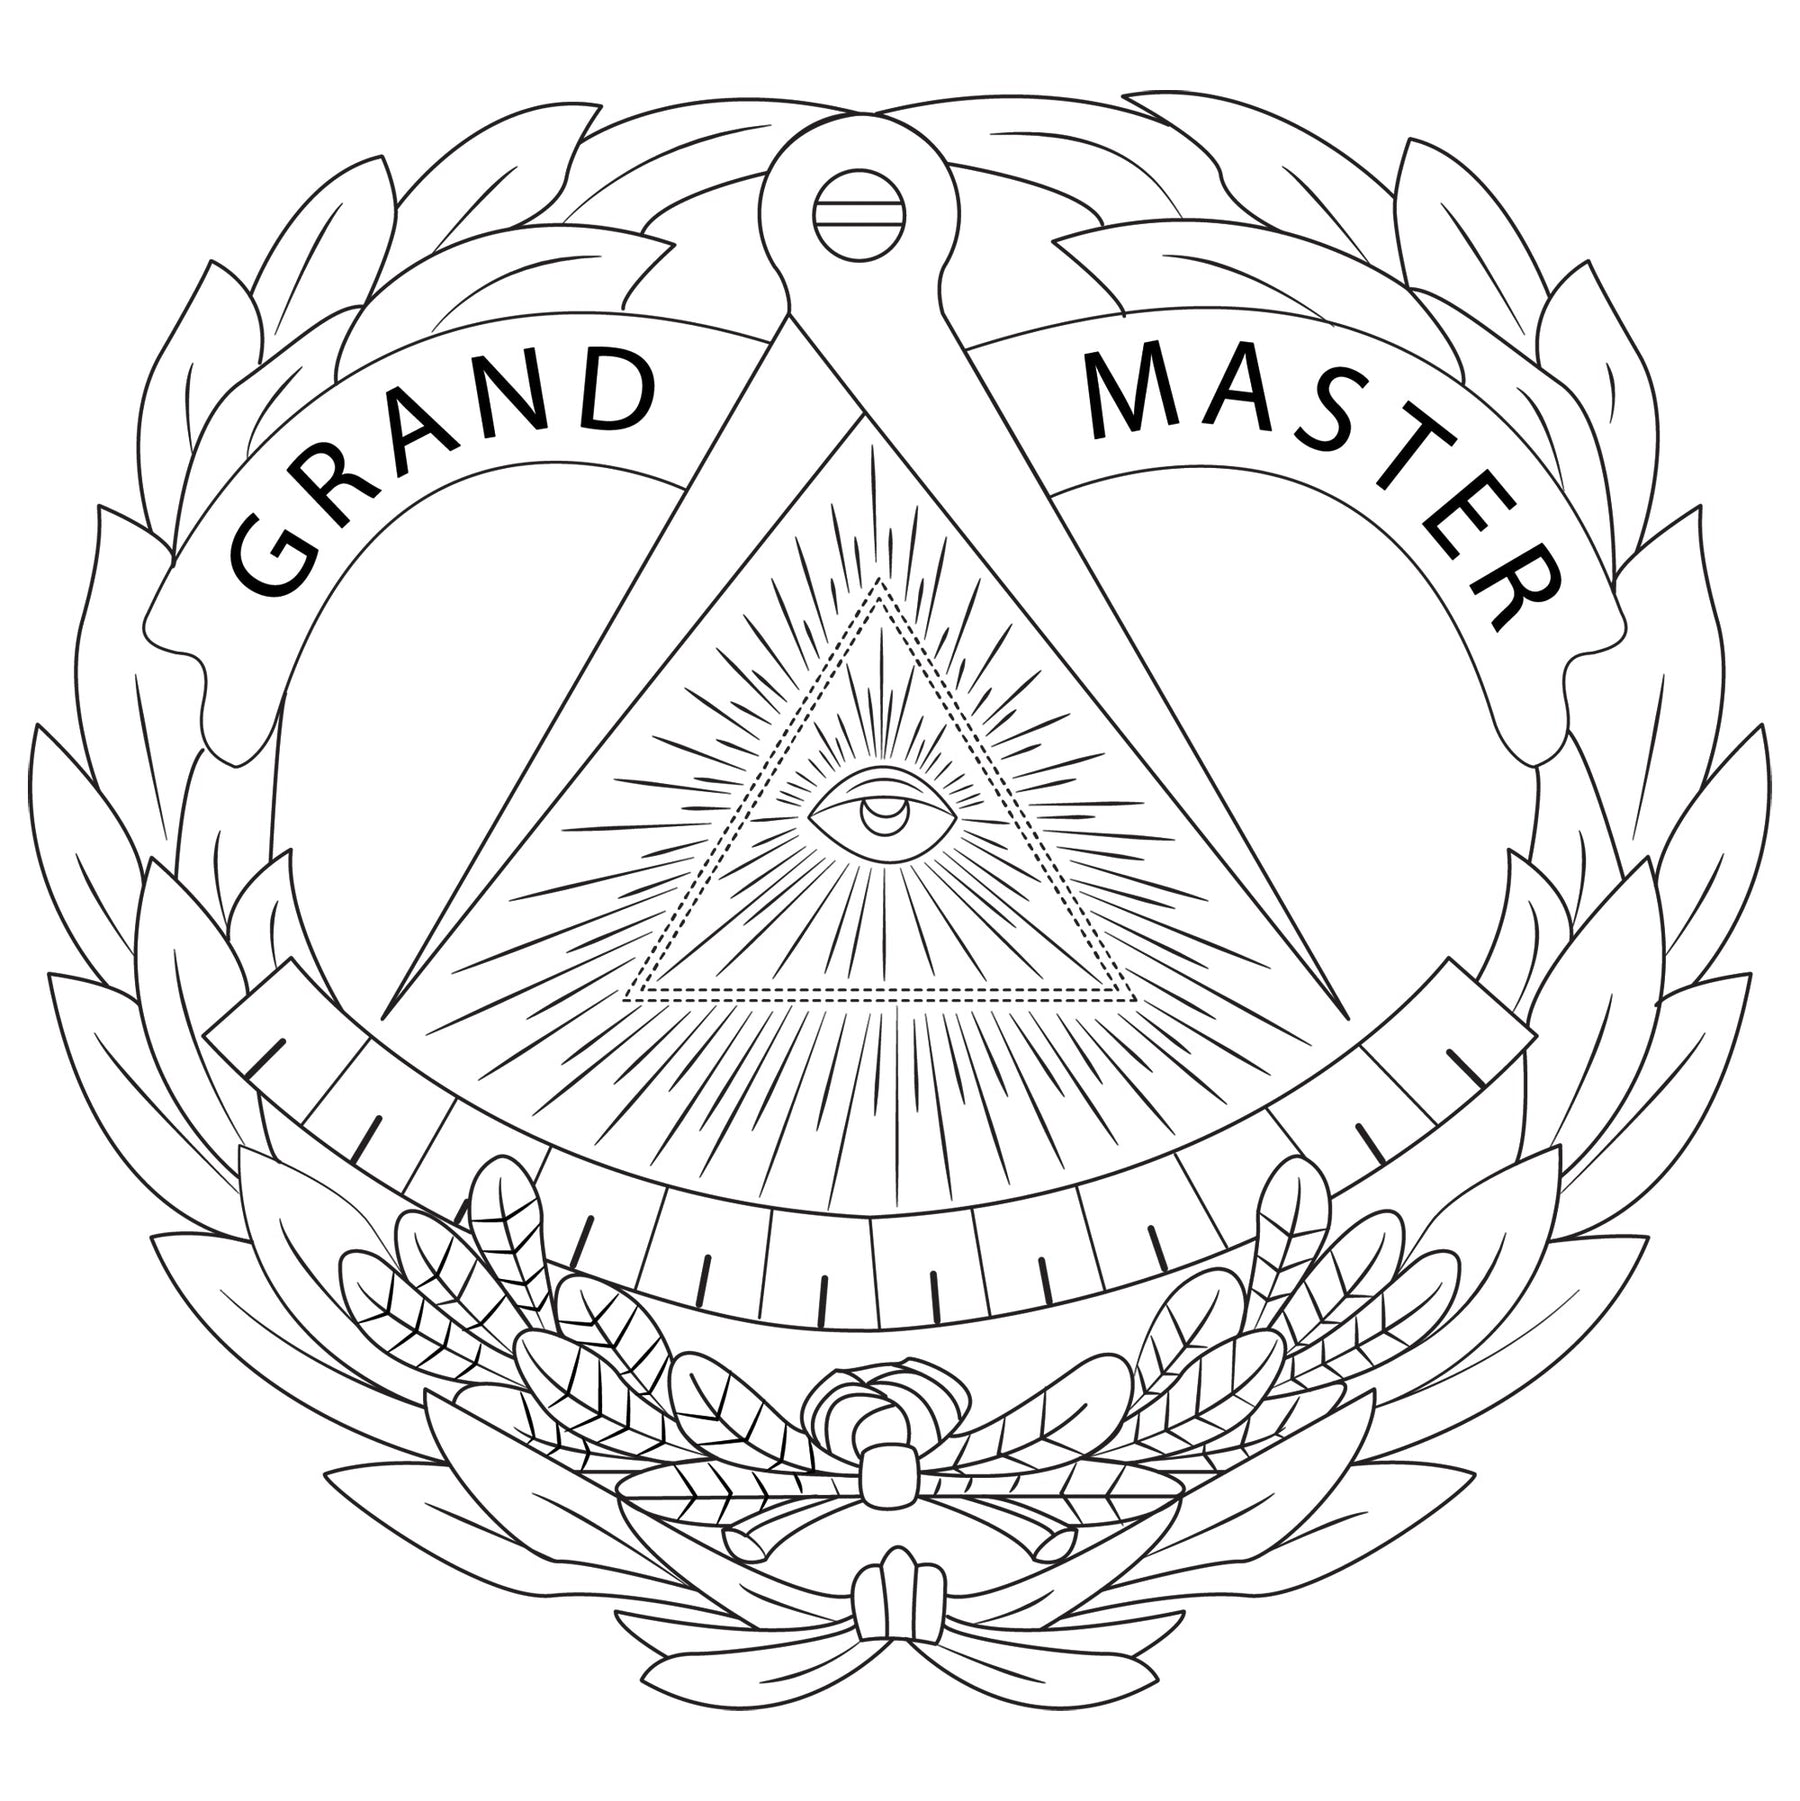 Grand Master Blue Lodge Wallet - Black & Brown - Bricks Masons